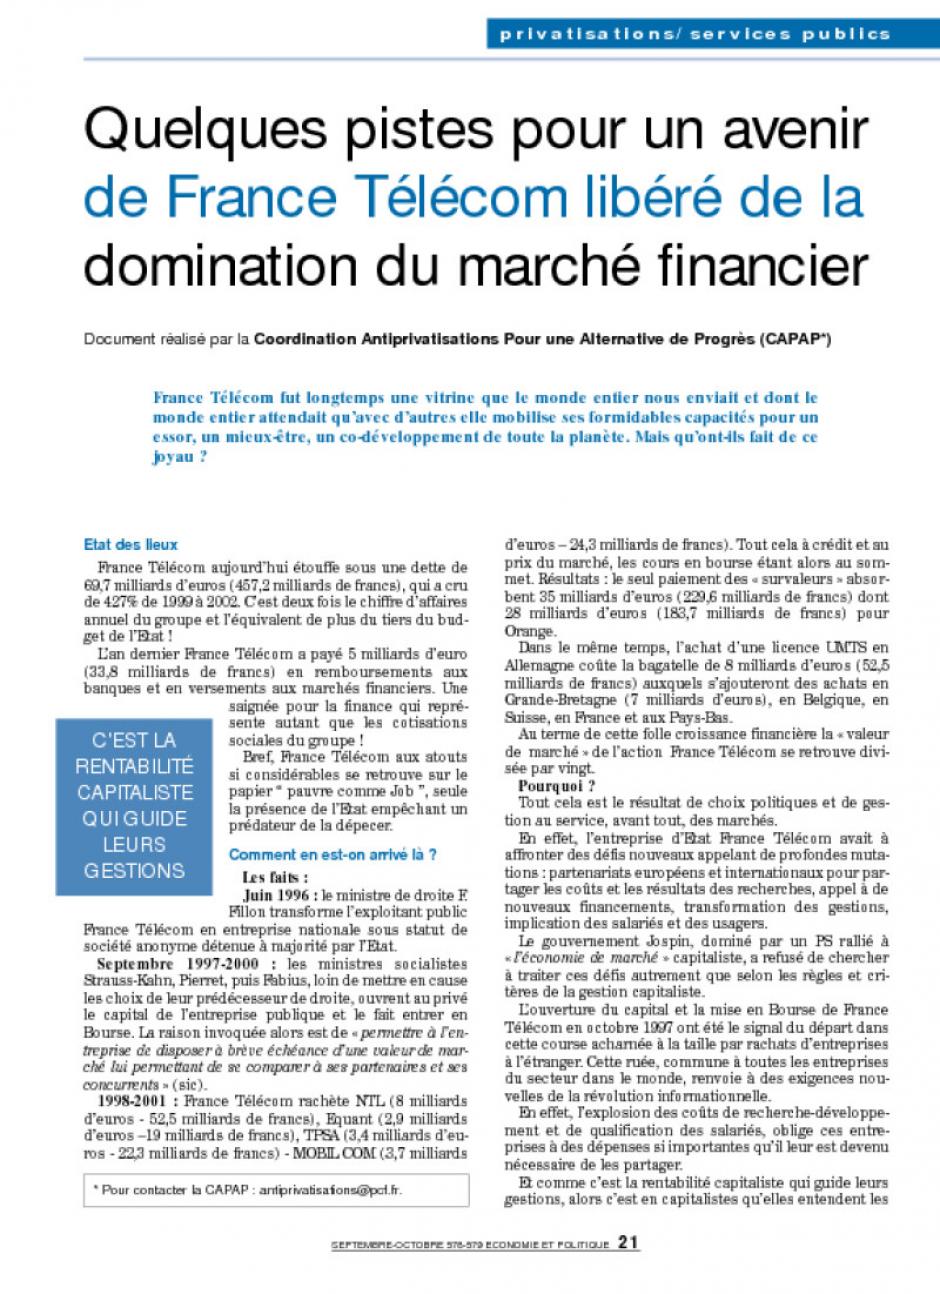 Quelques pistes pour un avenir de France Télécom libéré de la domination du marché financier